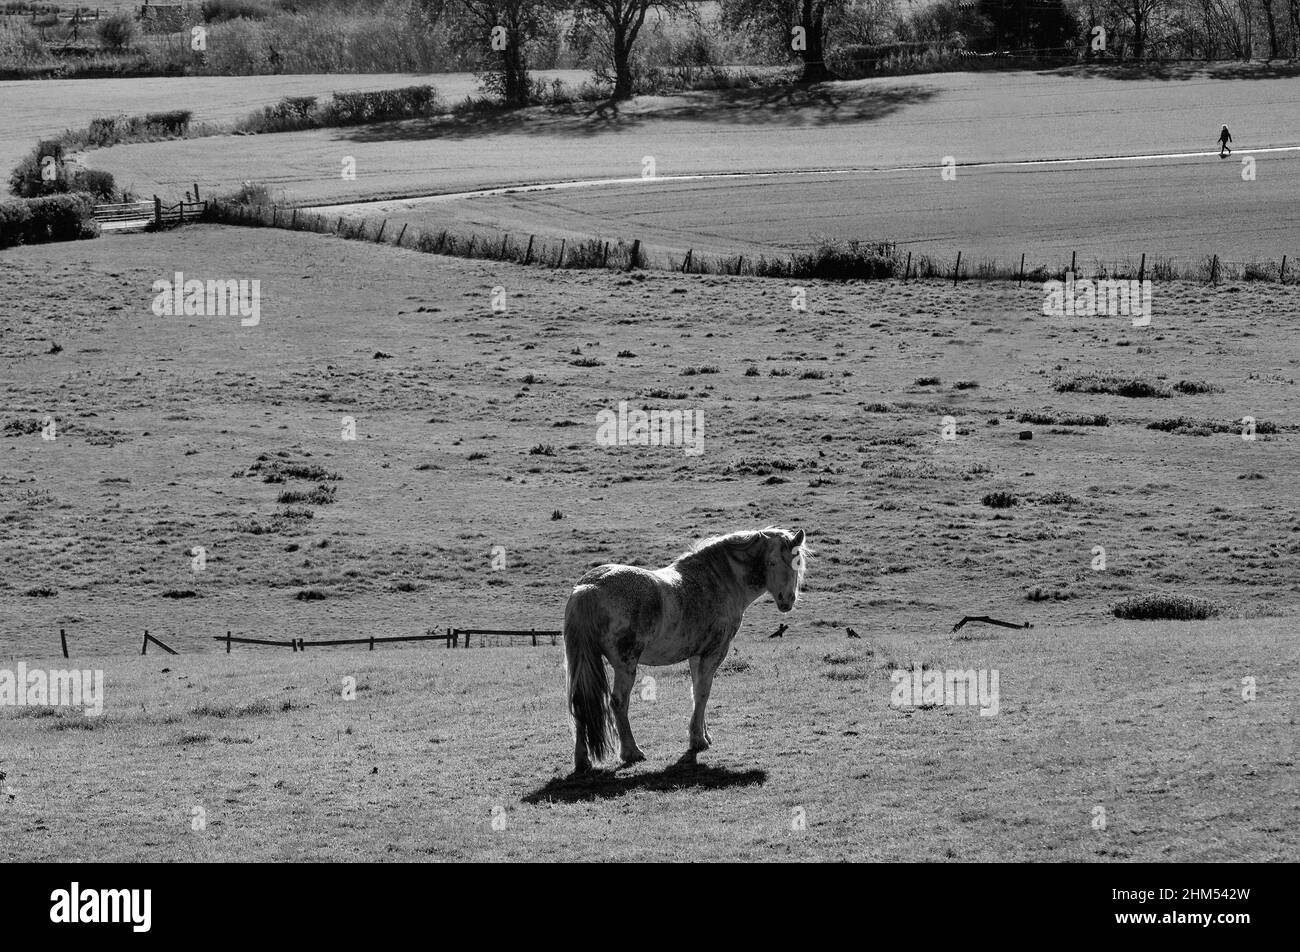 Immagine mono con cavallo che guarda verso lo spettatore in un campo con una figura distante che entra nel fotogramma da destra su un tracciato Foto Stock